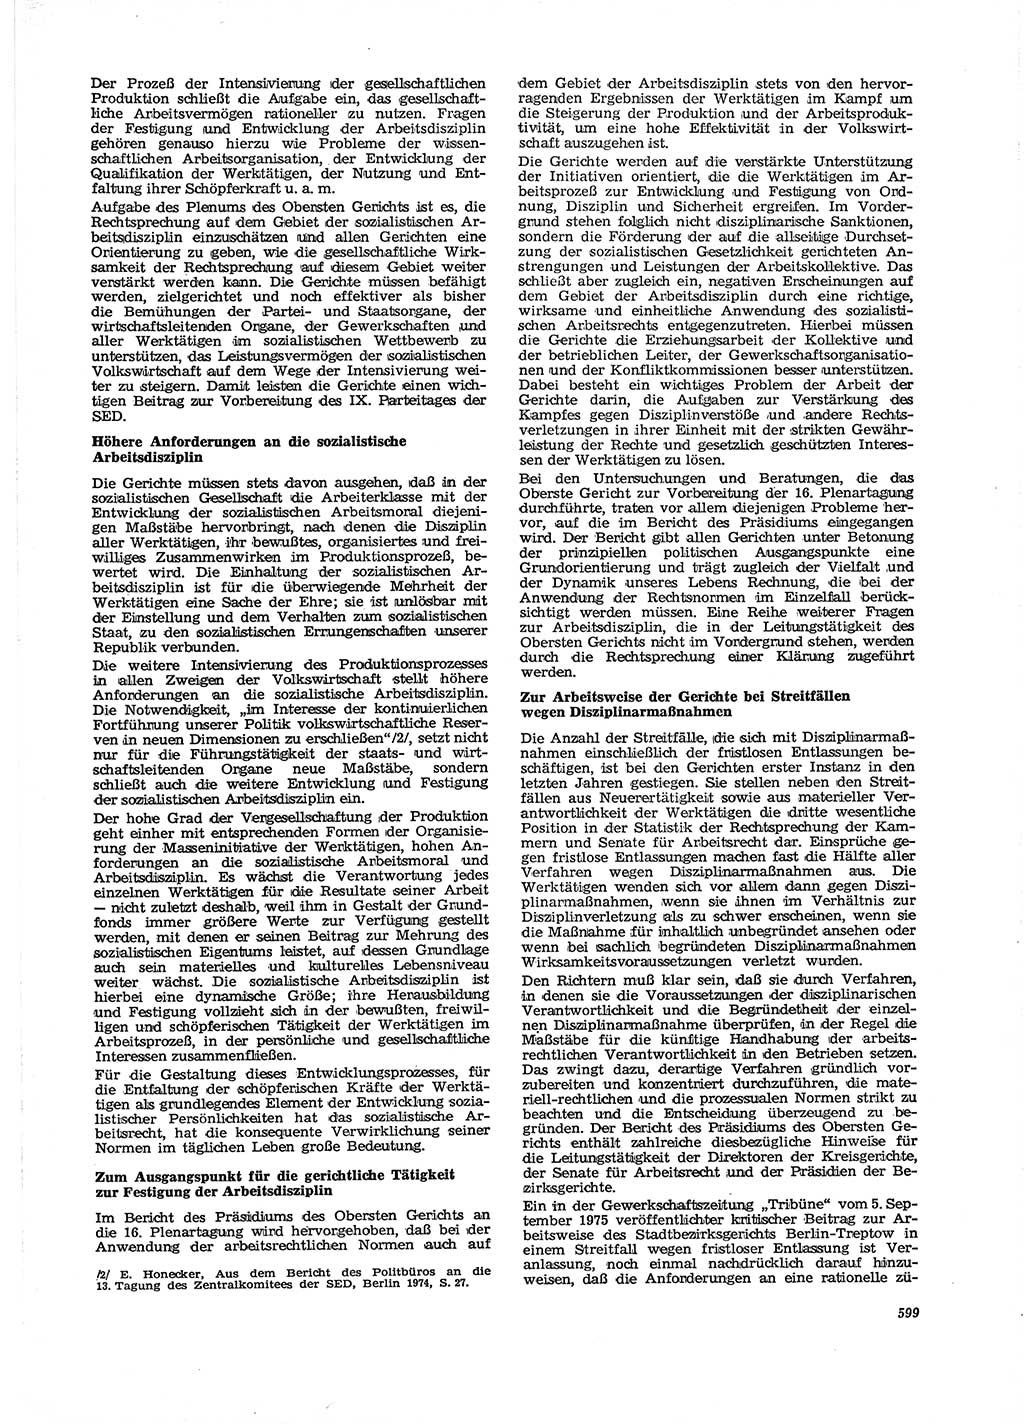 Neue Justiz (NJ), Zeitschrift für Recht und Rechtswissenschaft [Deutsche Demokratische Republik (DDR)], 29. Jahrgang 1975, Seite 599 (NJ DDR 1975, S. 599)